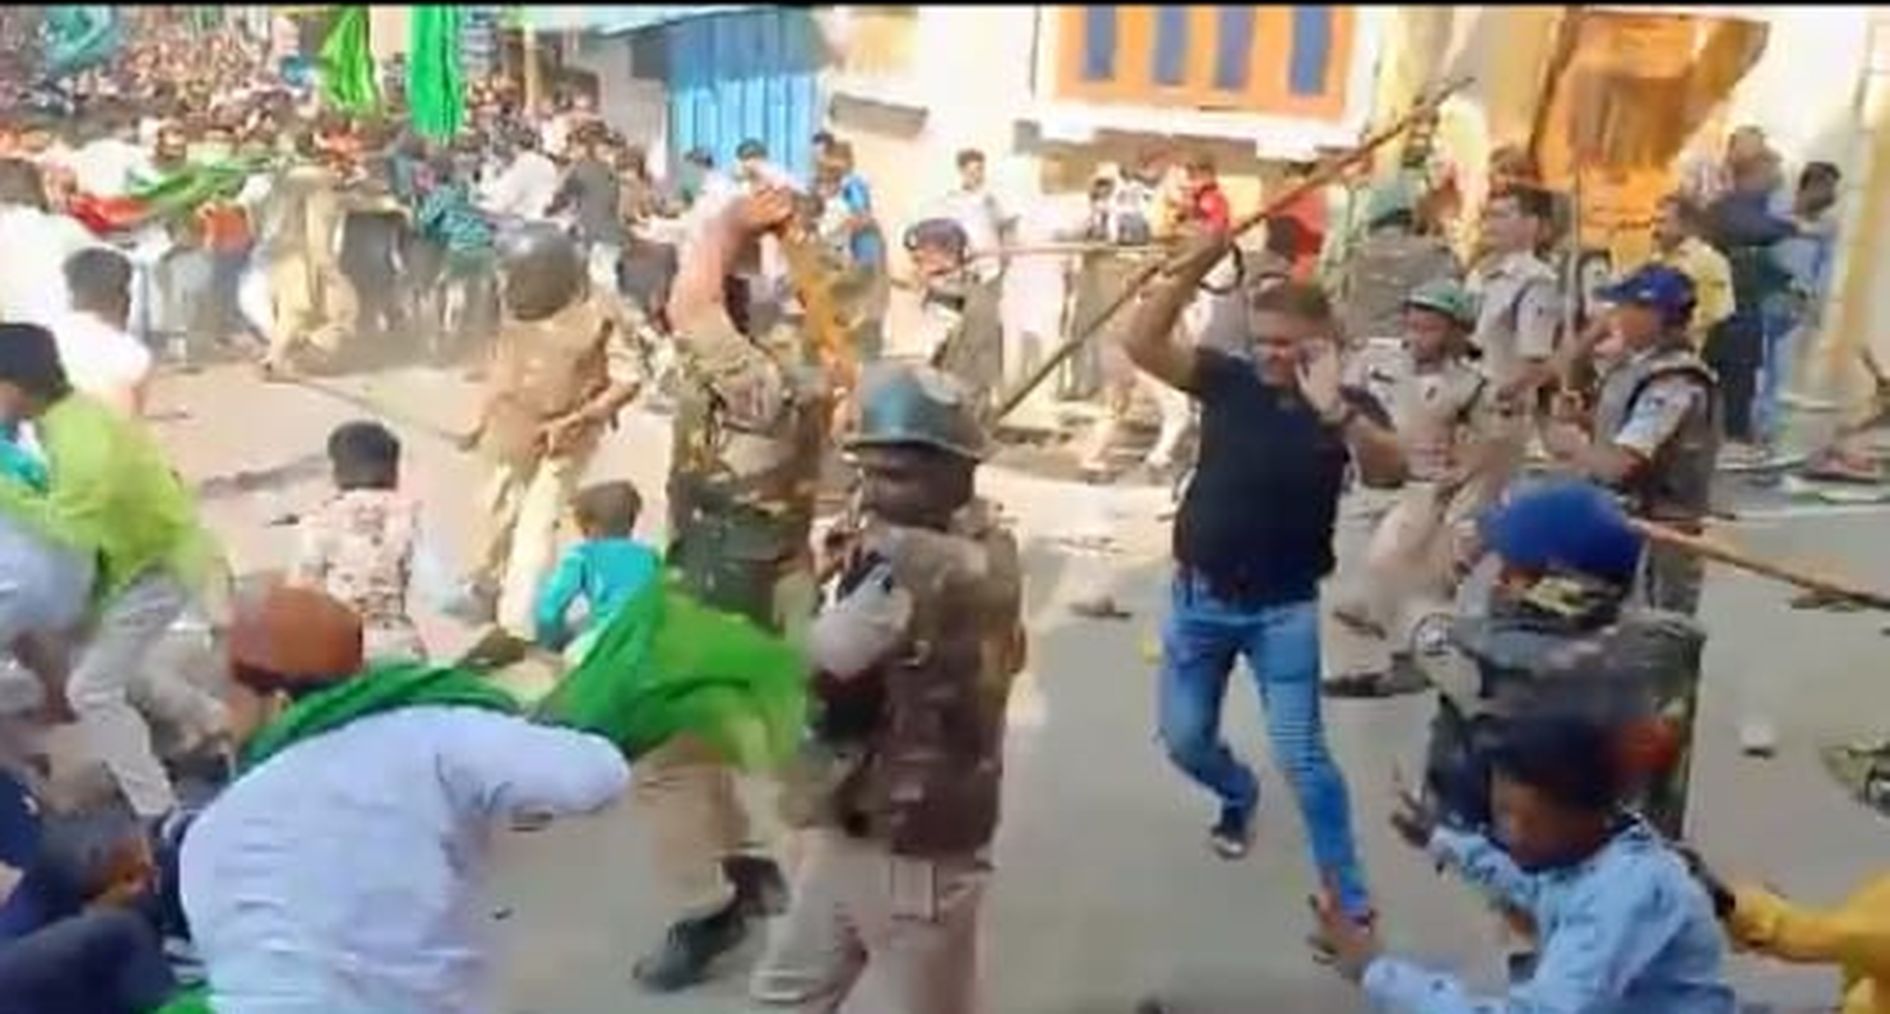 VIDEO मनाही के बाद जमा हुई भीड, अनियंत्रित हुए लोग पुलिस ने किया लाठीचार्ज आहू के युवक का भीड़ ने फोडा सिर